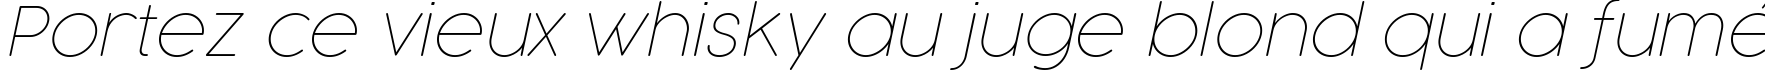 Пример написания шрифтом Cocogoose Pro Thin Italic текста на французском